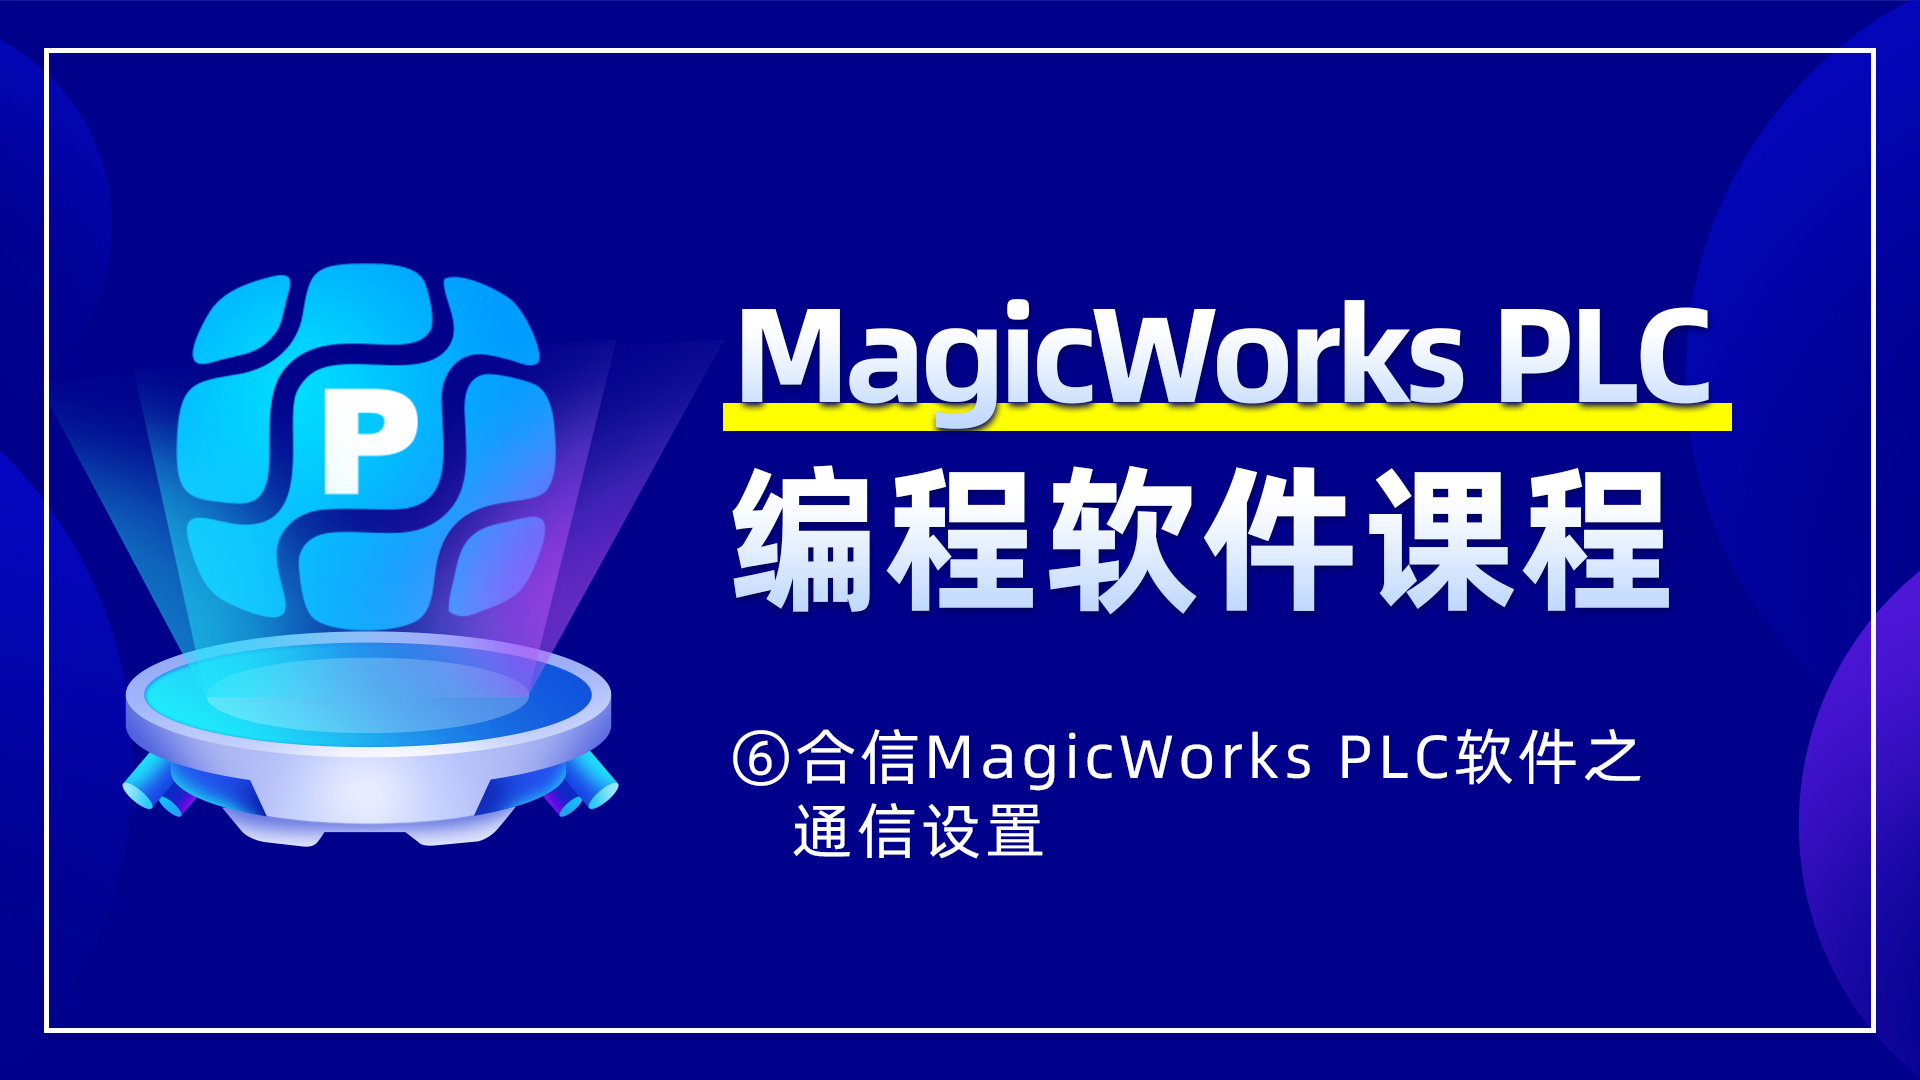 6. 合信MagicWorks PLCApp之通信设置